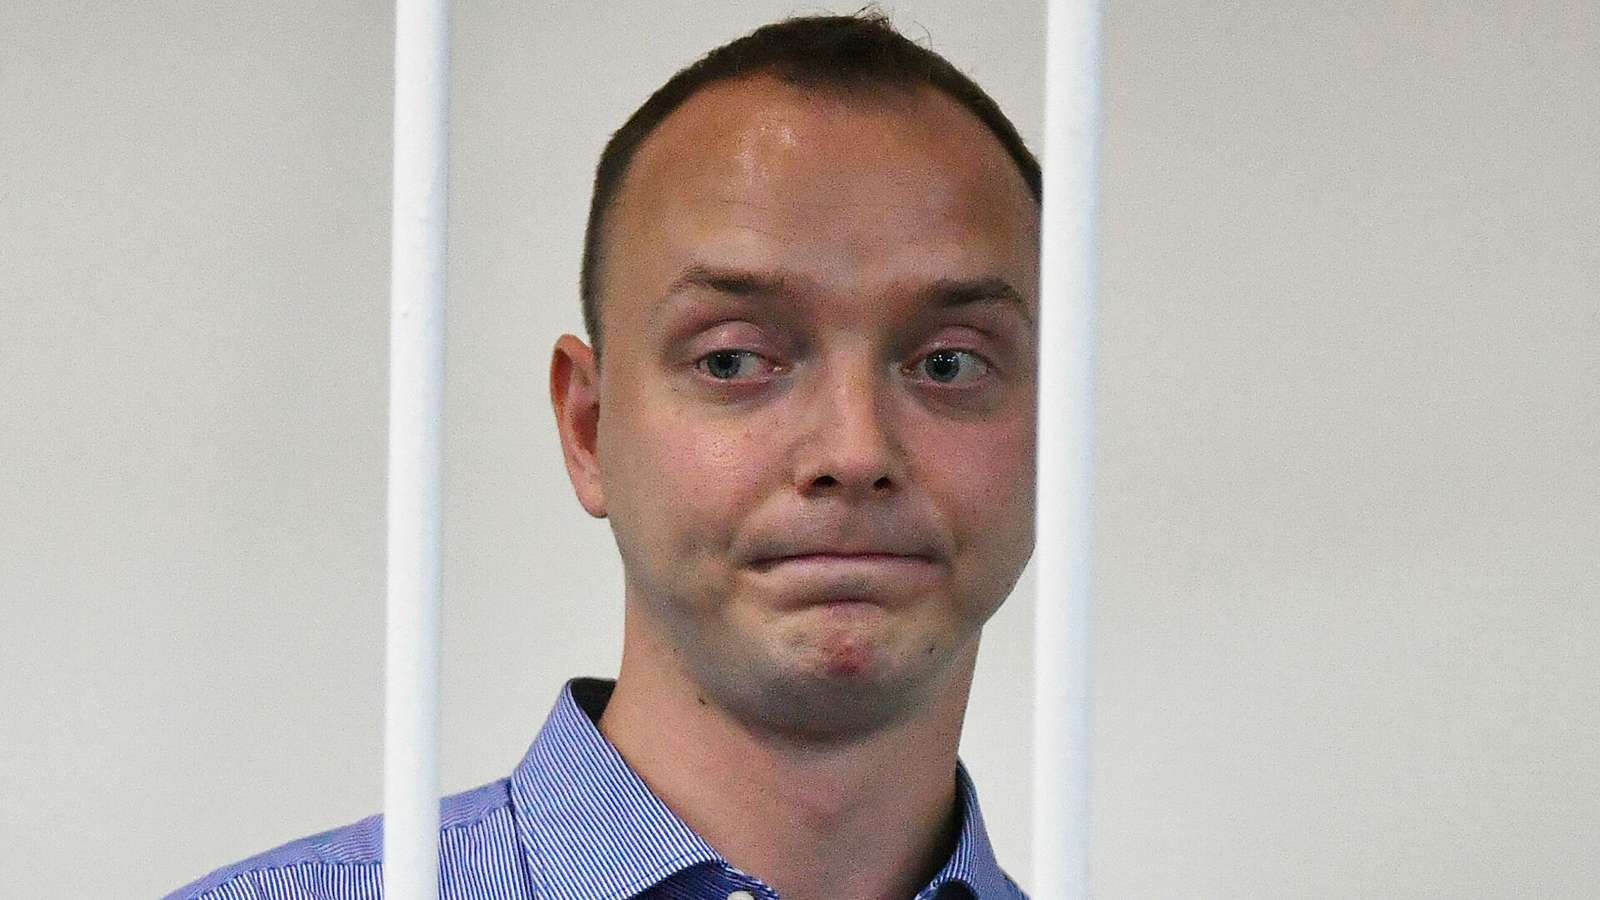 Следователь ФСБ предложил Ивану Сафронову сотрудничать со следствием за звонок матери — адвокат